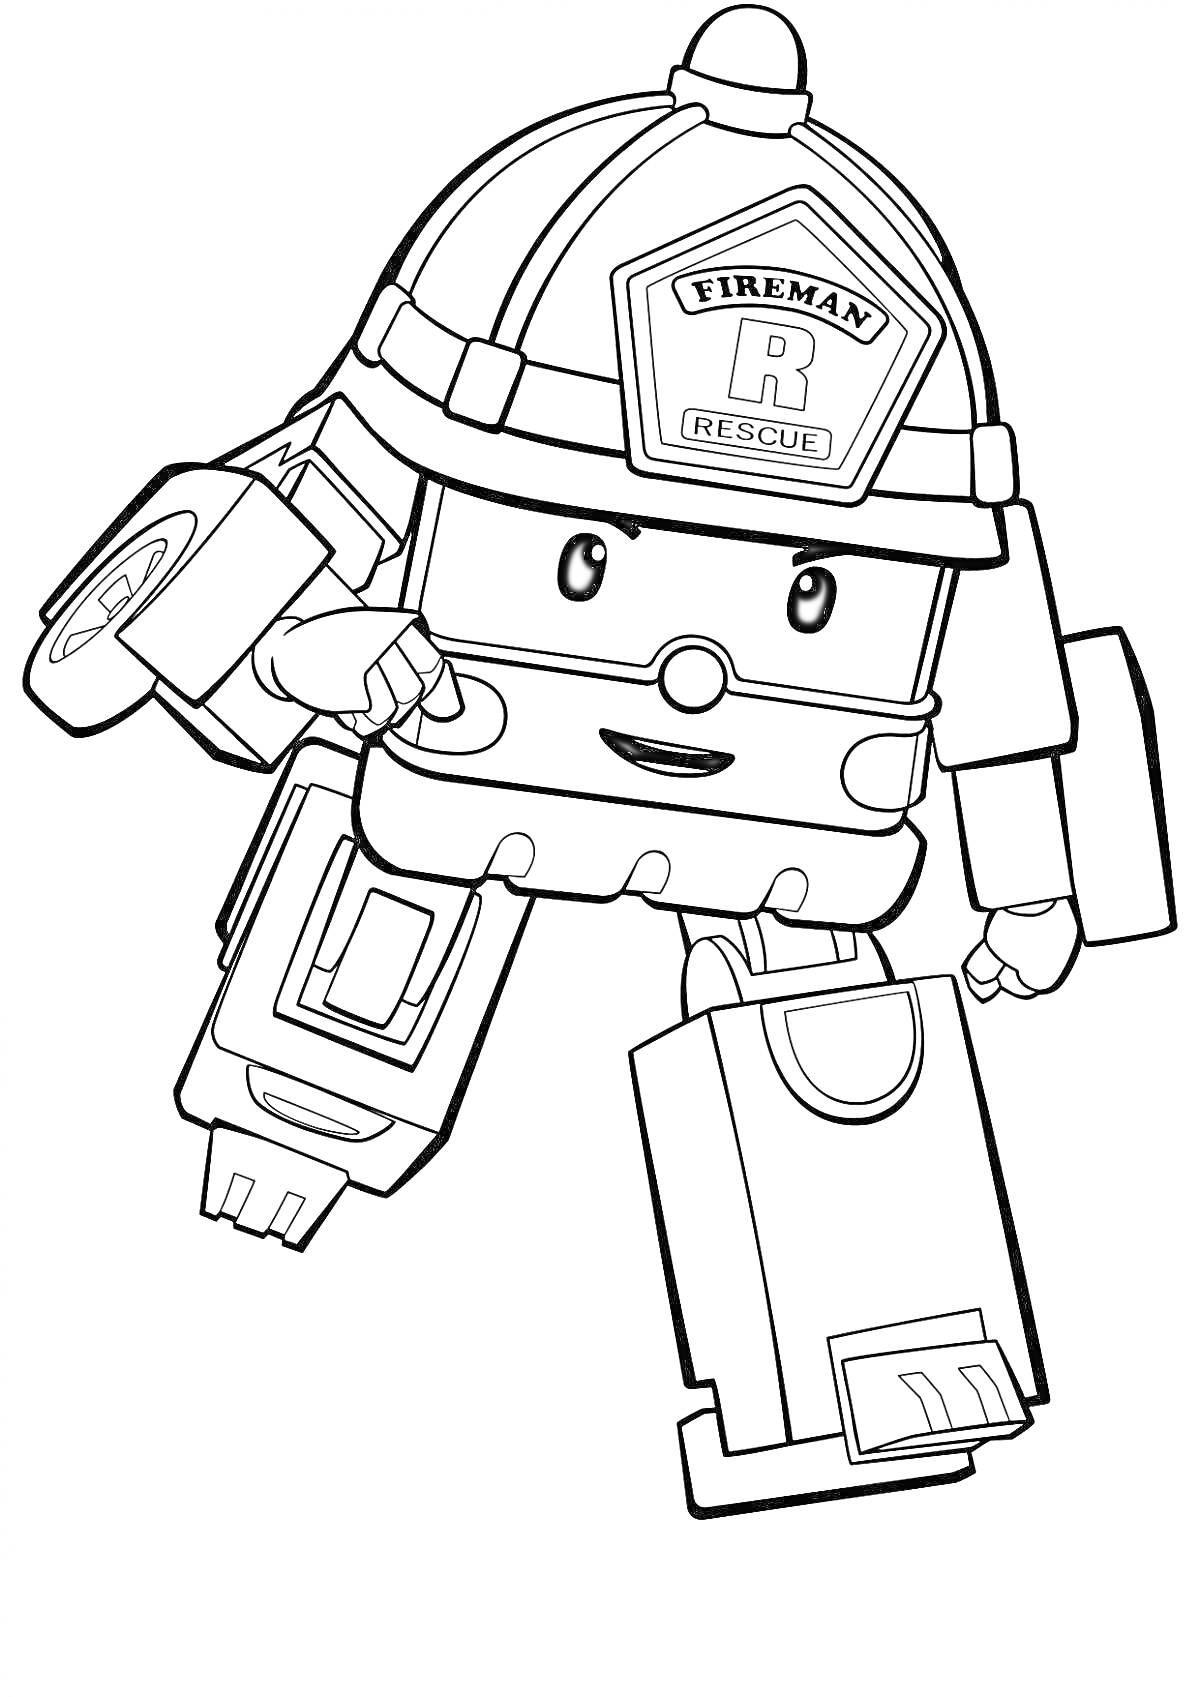 Раскраска Пожарный робокар с каской и выражением лица, поднимающий руку.